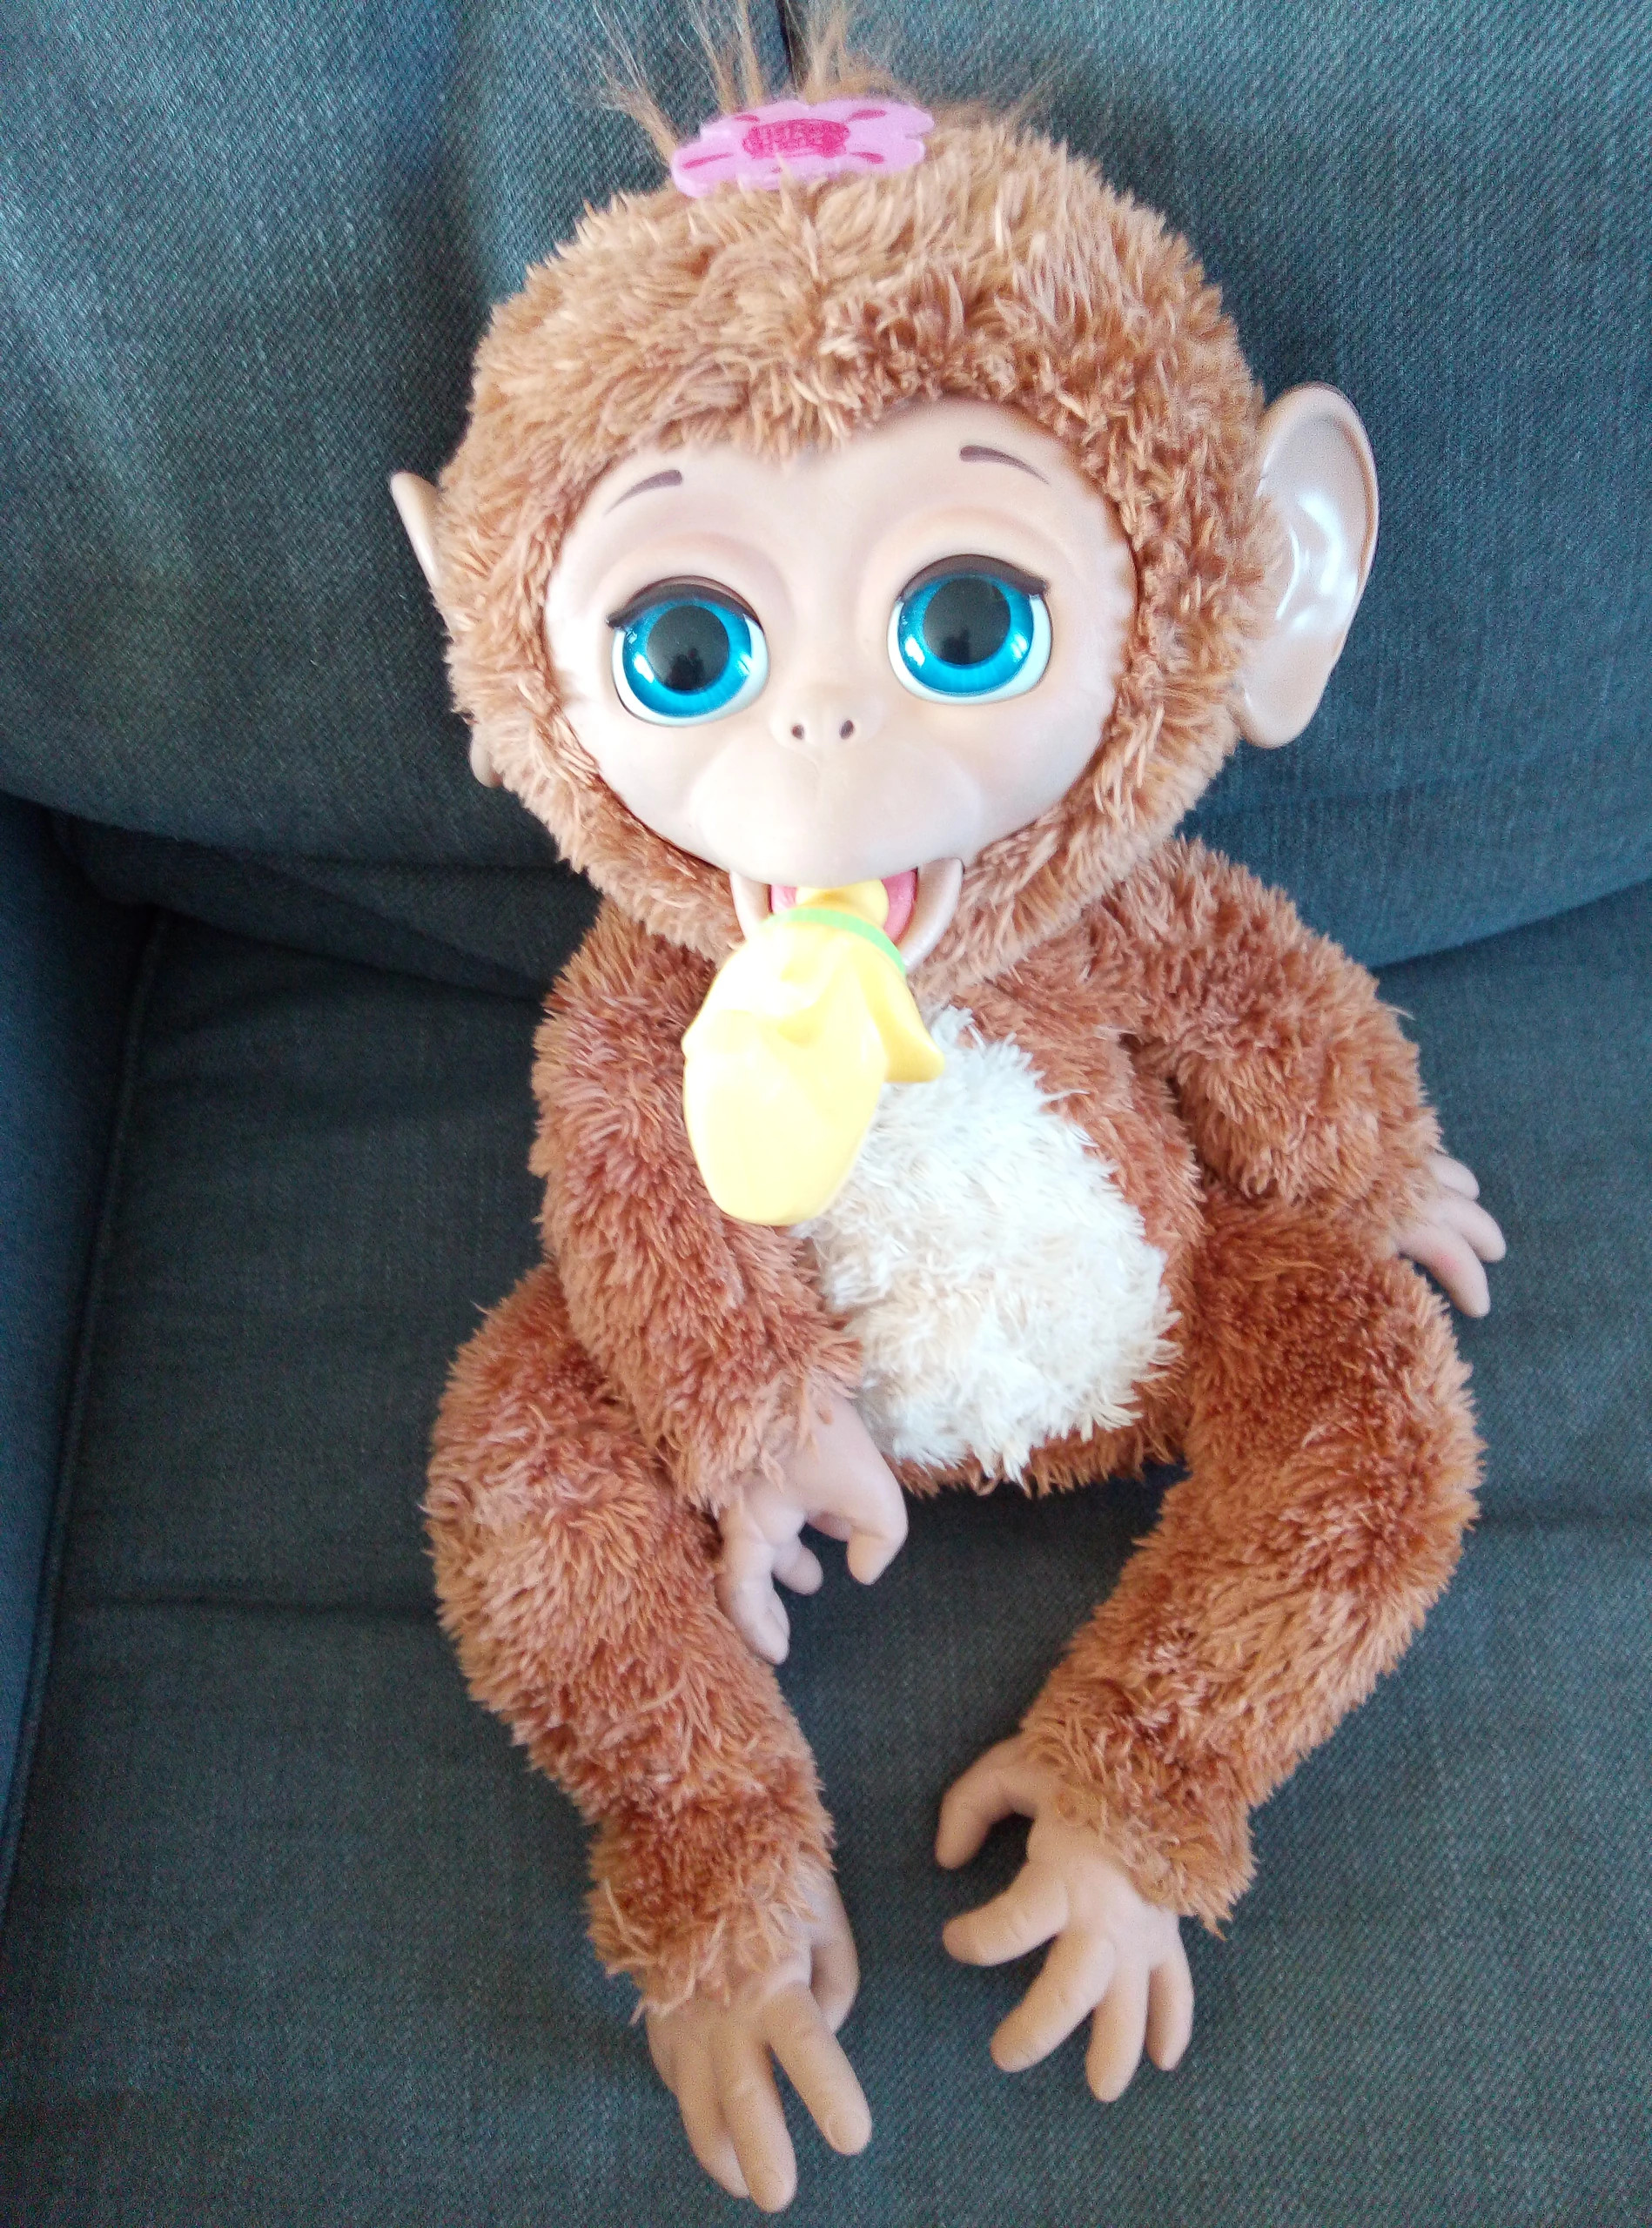 Le singe Fur Real - Testinaute@Home, On avait dit plus de bébé à la maison  mais on a craqué #furrealfriends #singe #monkey #jouet #commeunbébé, By  Testinaute